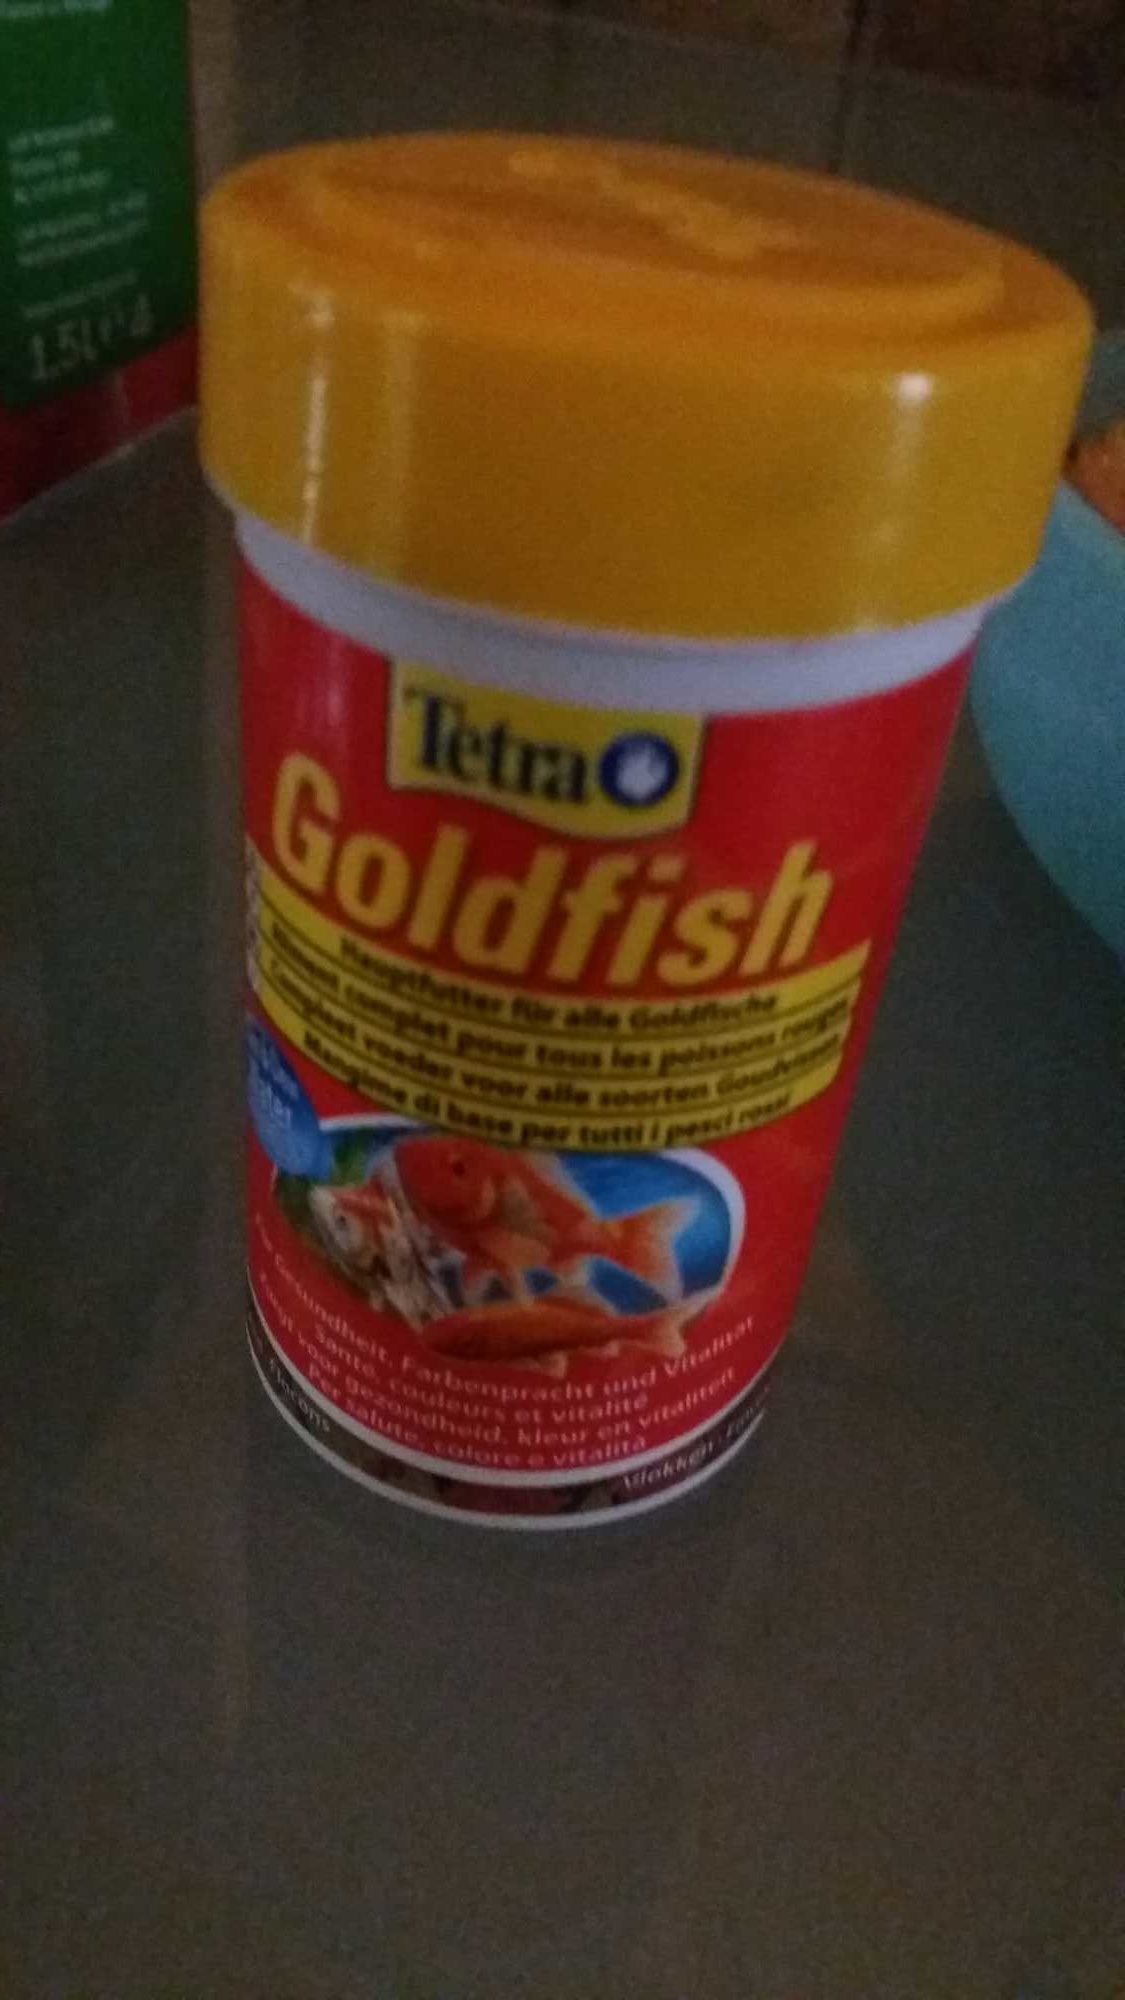 Aliment complet pour tous les poissons - Product - fr